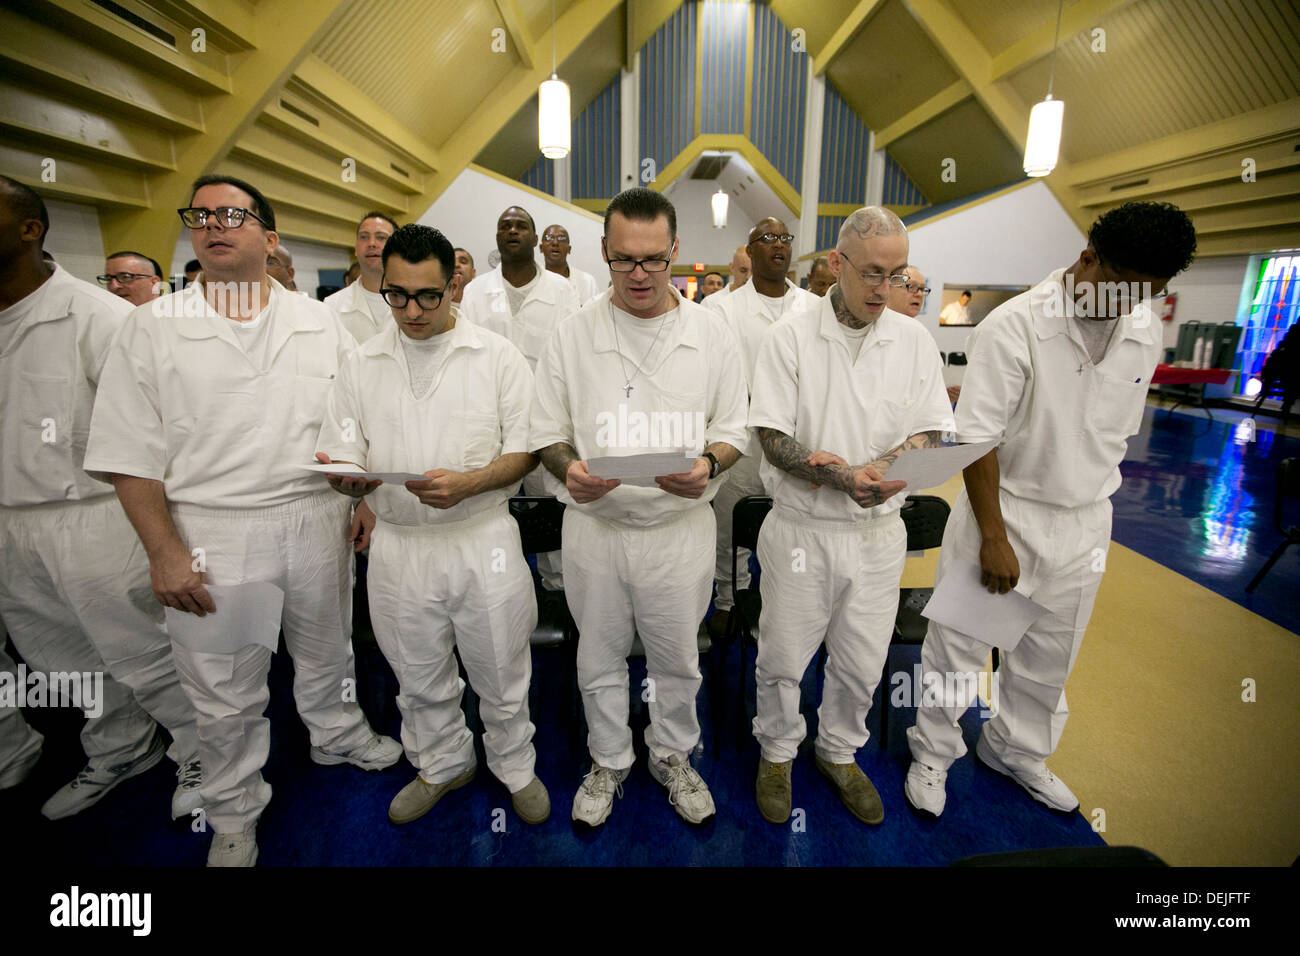 Priez pour les détenus, chanter et écouter lors de conférences à la cérémonie de collation de prison à sécurité maximale près de Houston, Texas Banque D'Images